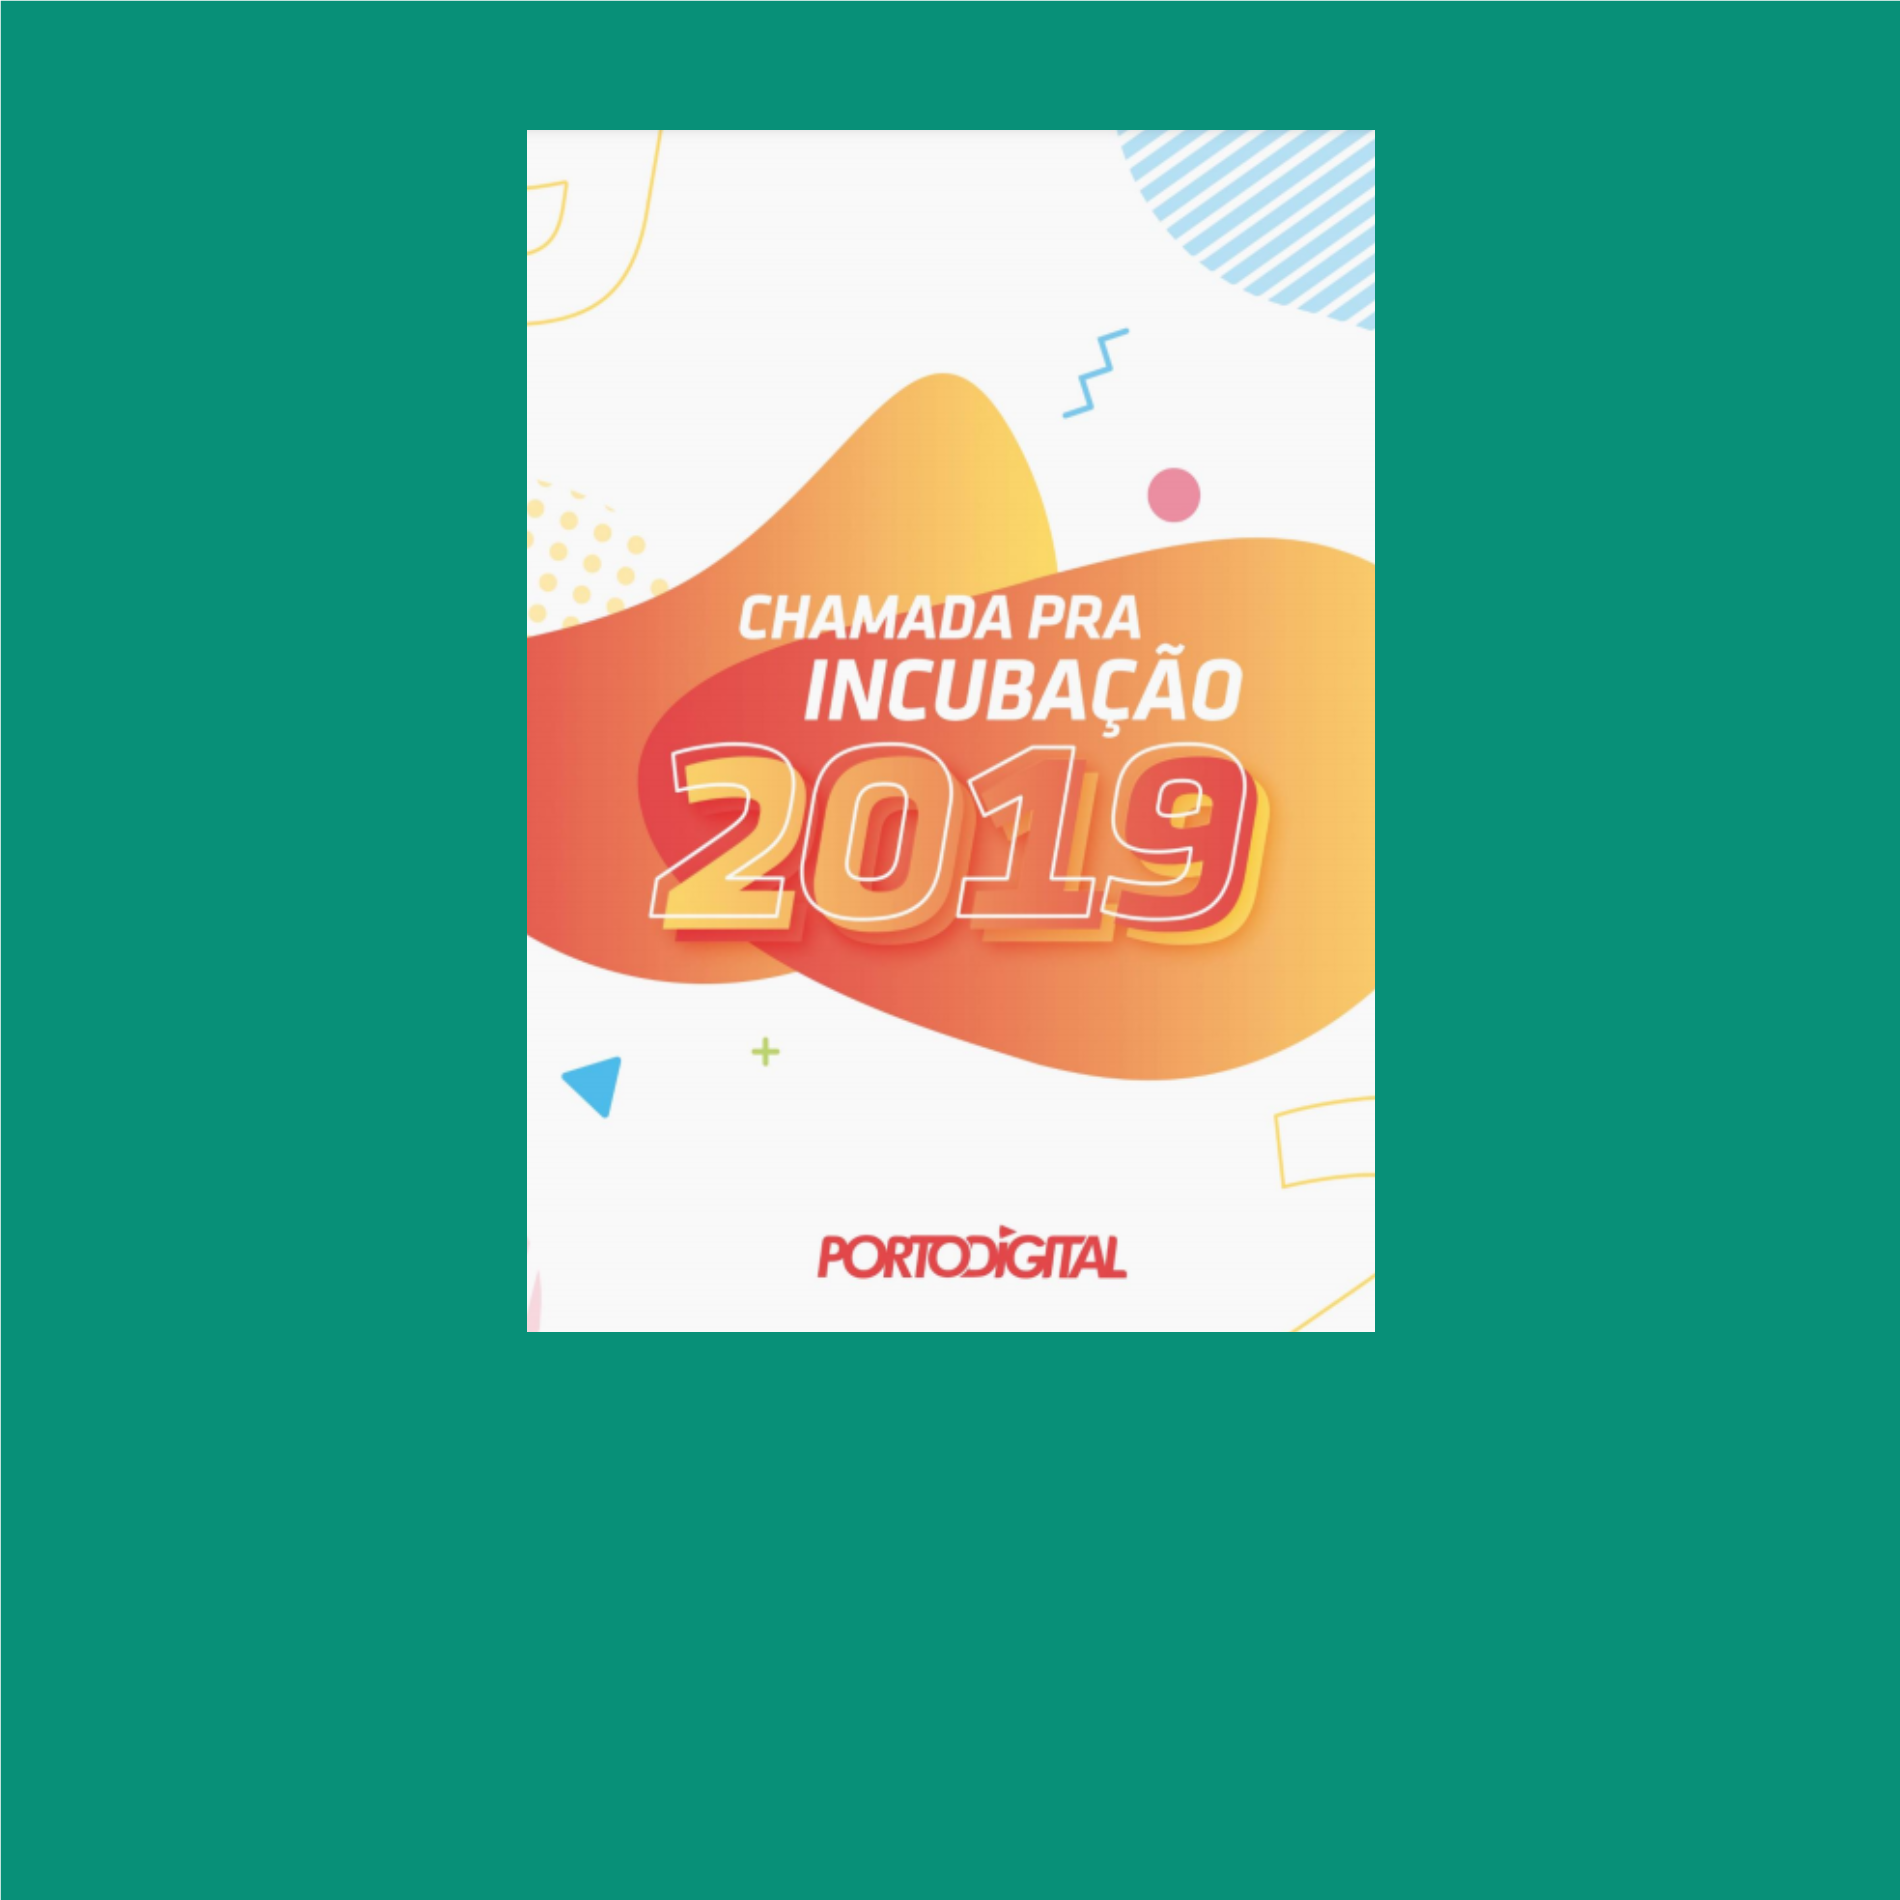 Incubação no Porto Digital 2019/2020